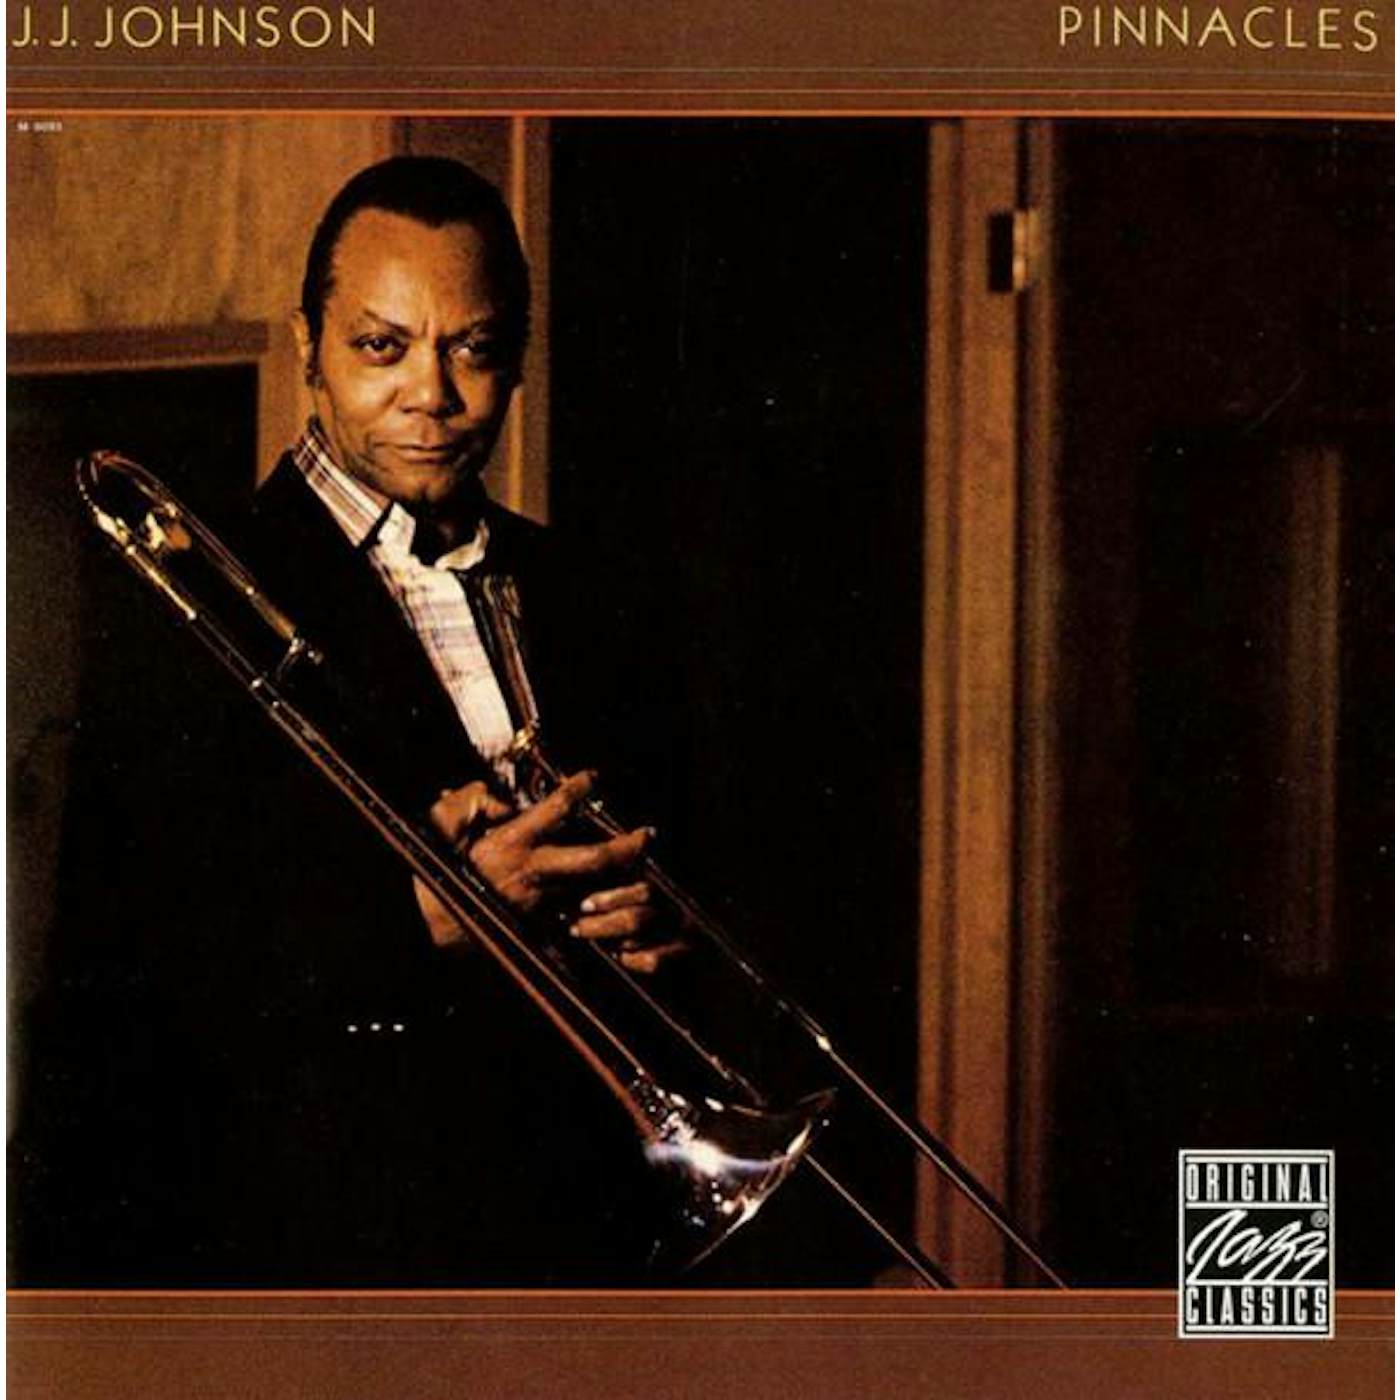 J.J. Johnson PINNACLES CD